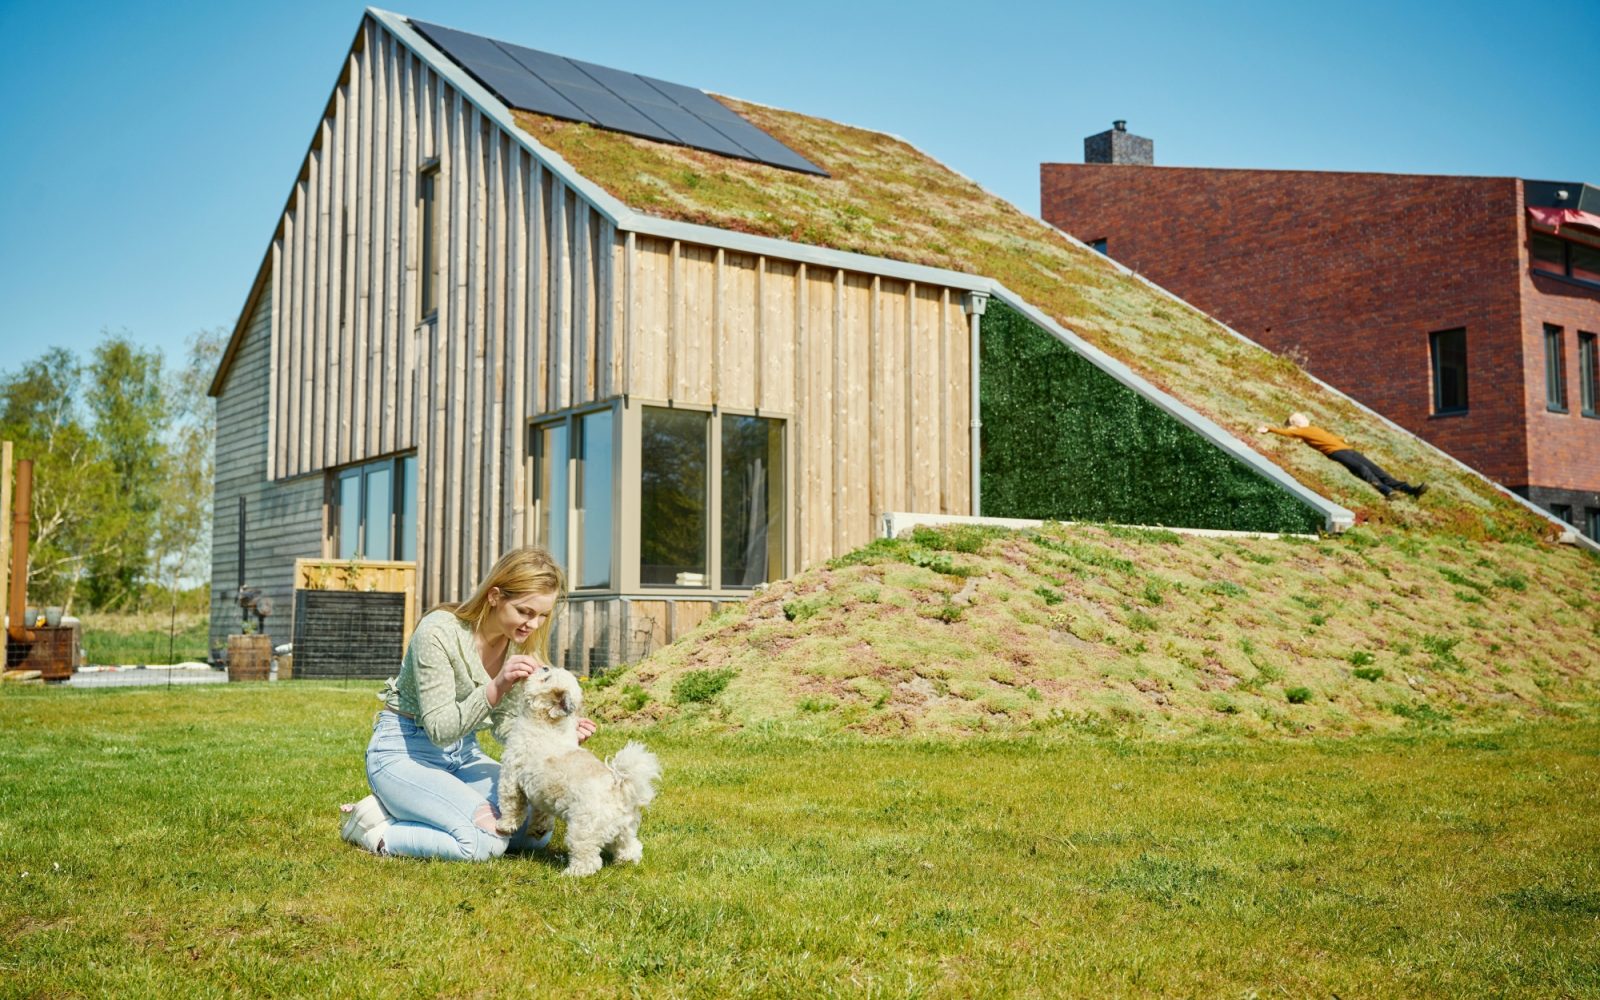  1600x1000 crop center center noneduurzaam groningen zonnepanelen groen dak